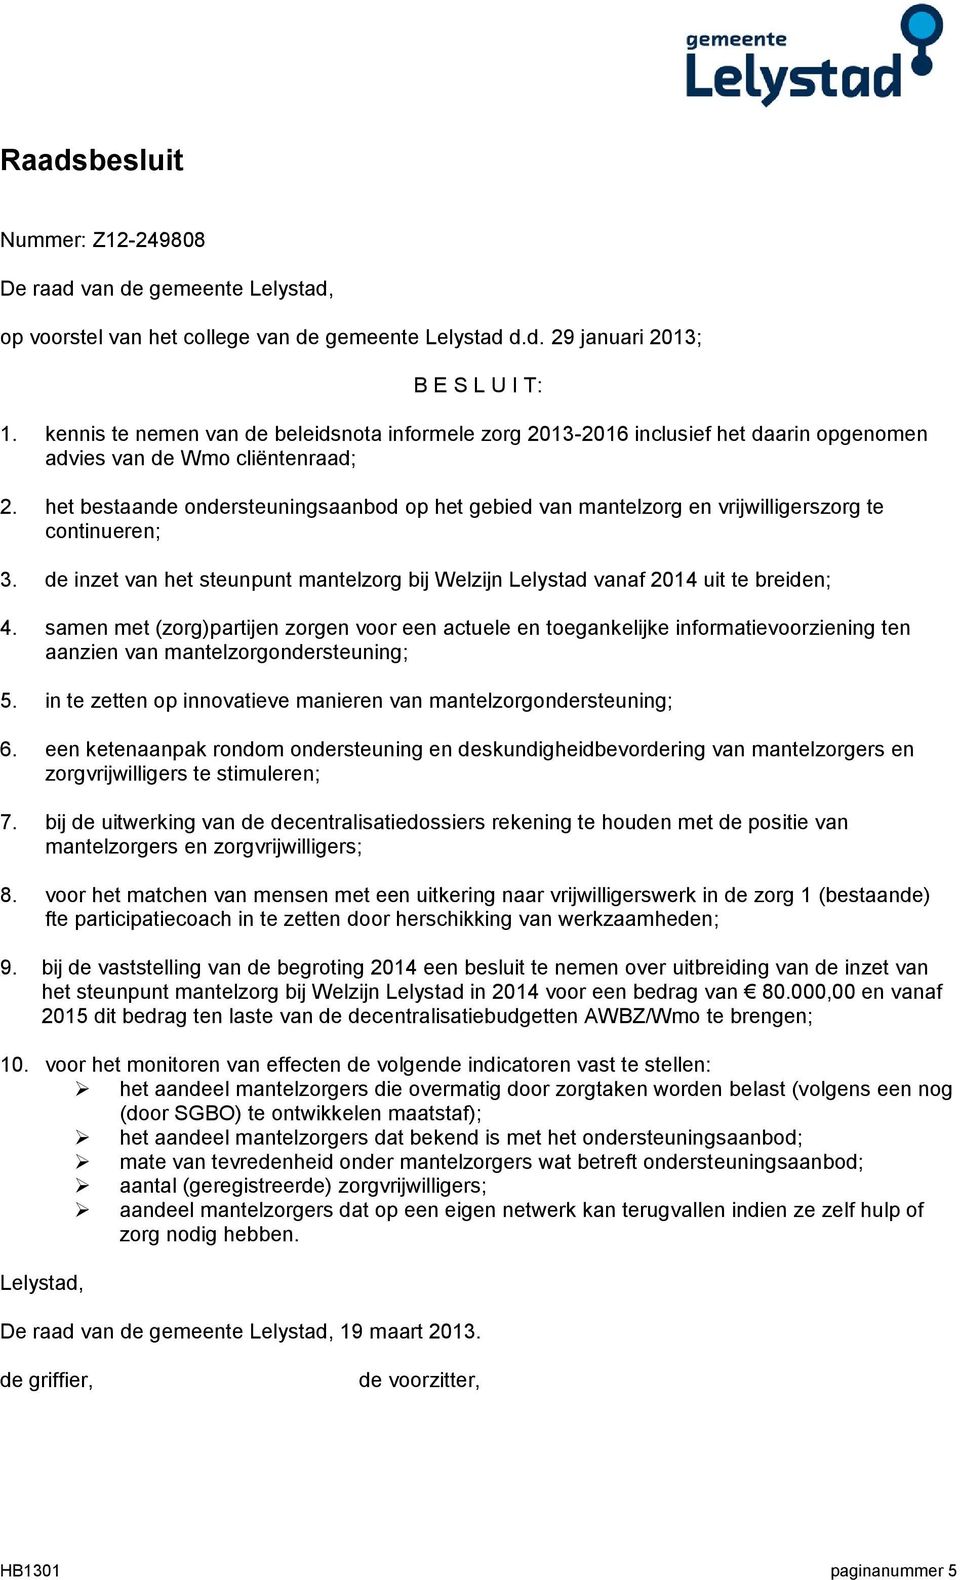 het bestaande ondersteuningsaanbod op het gebied van mantelzorg en vrijwilligerszorg te continueren; 3. de inzet van het steunpunt mantelzorg bij Welzijn Lelystad vanaf 2014 uit te breiden; 4.